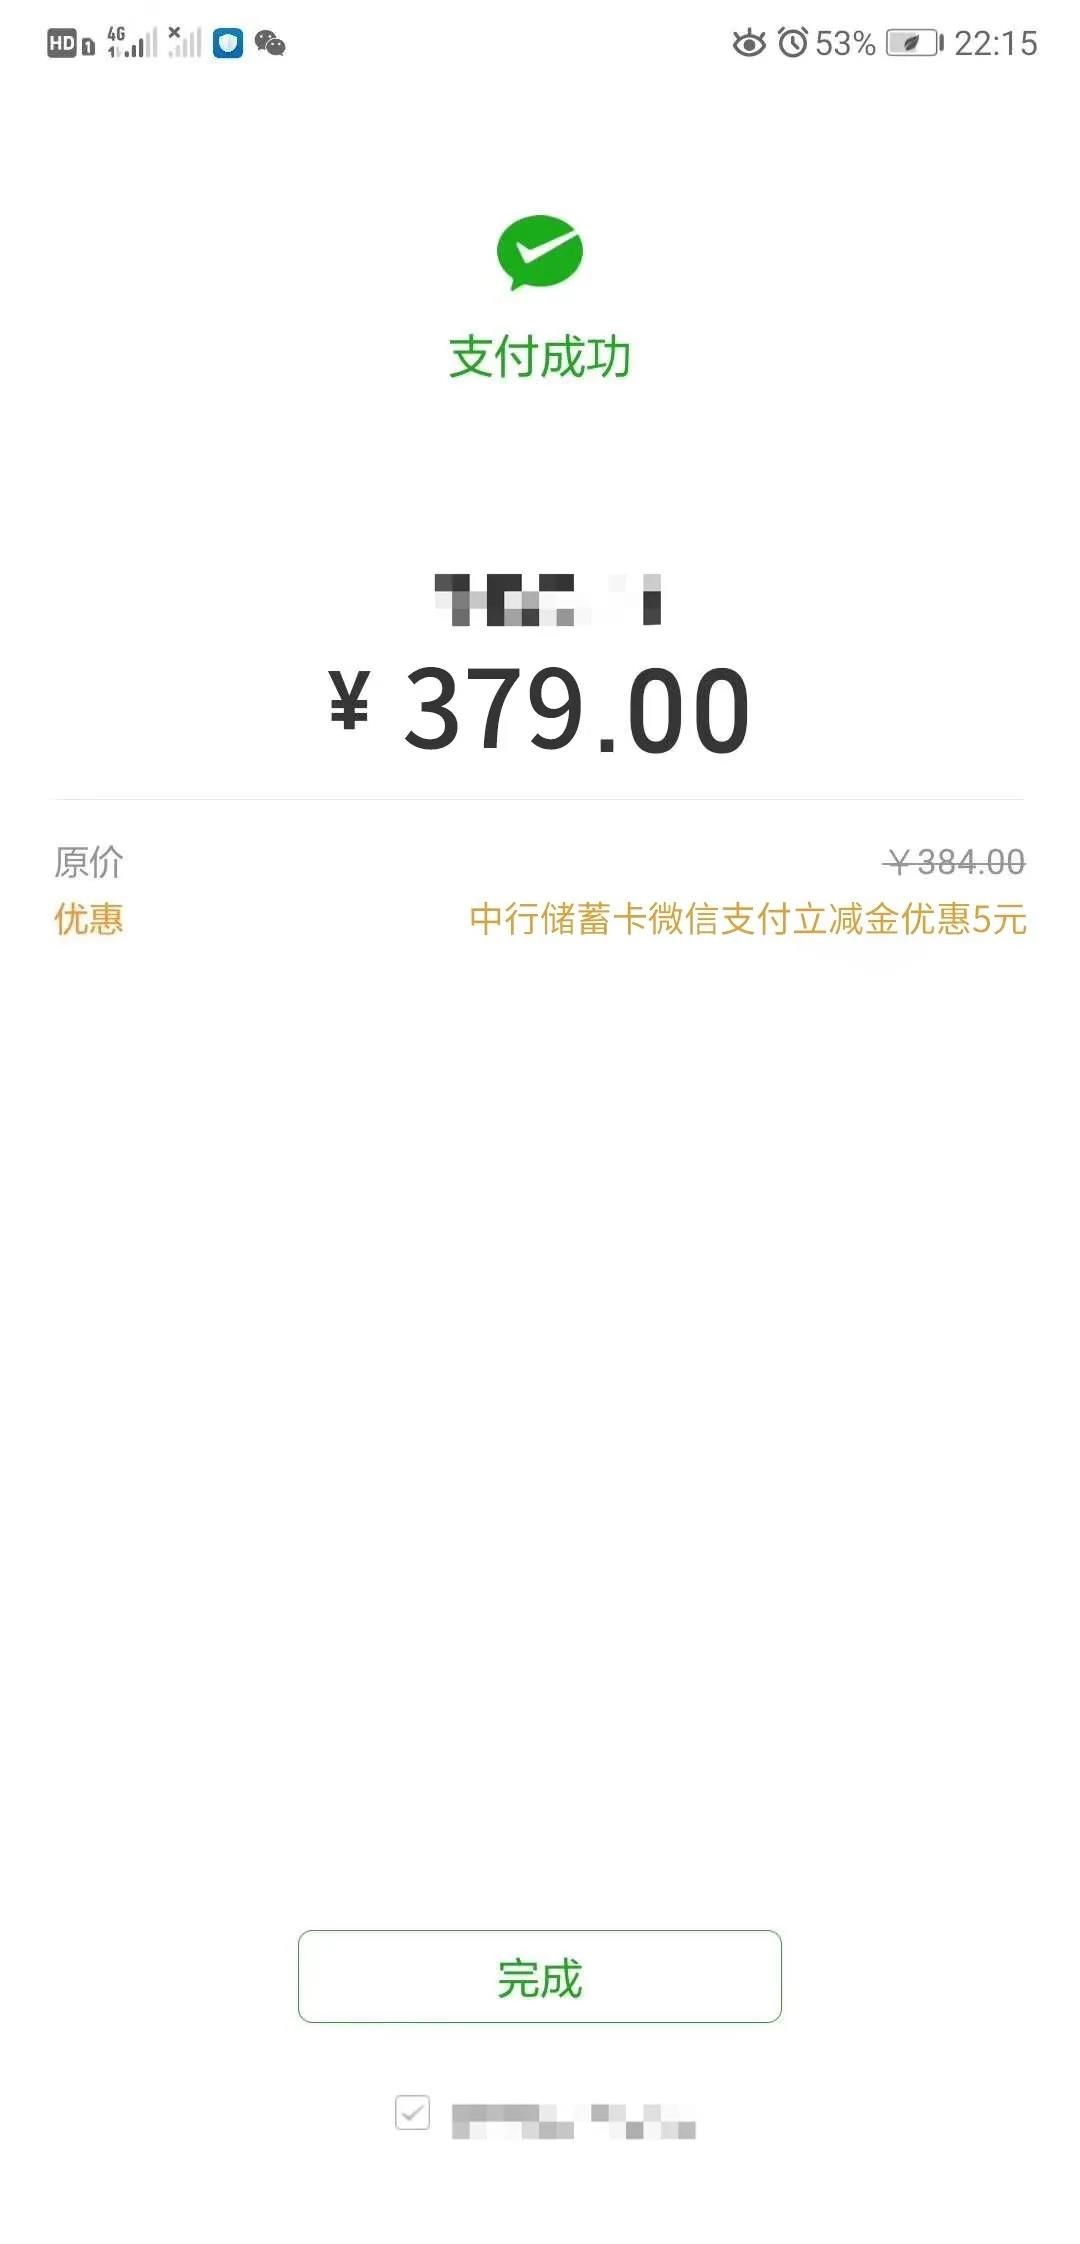 【中国银行红包·省】微信支付就送立减金!速领!